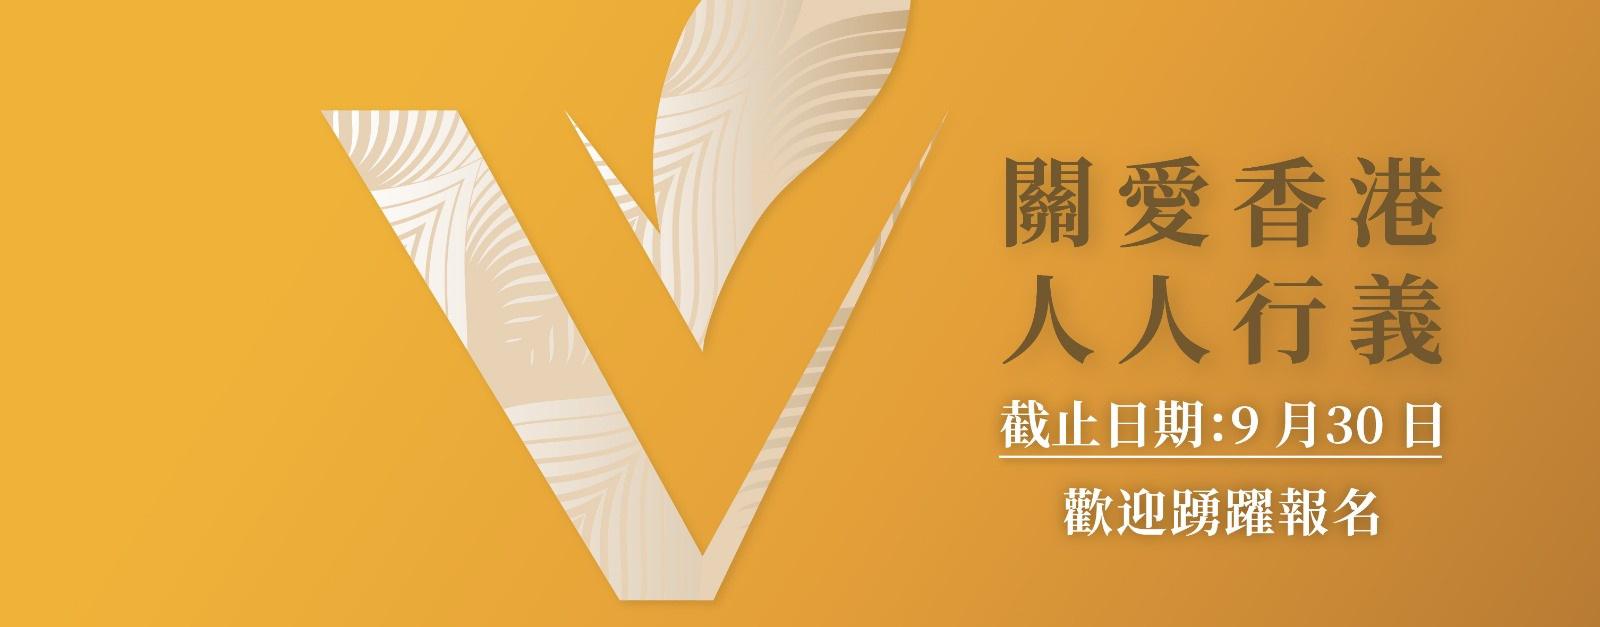 Hong Kong Volunteer Award Officially Open for Entries